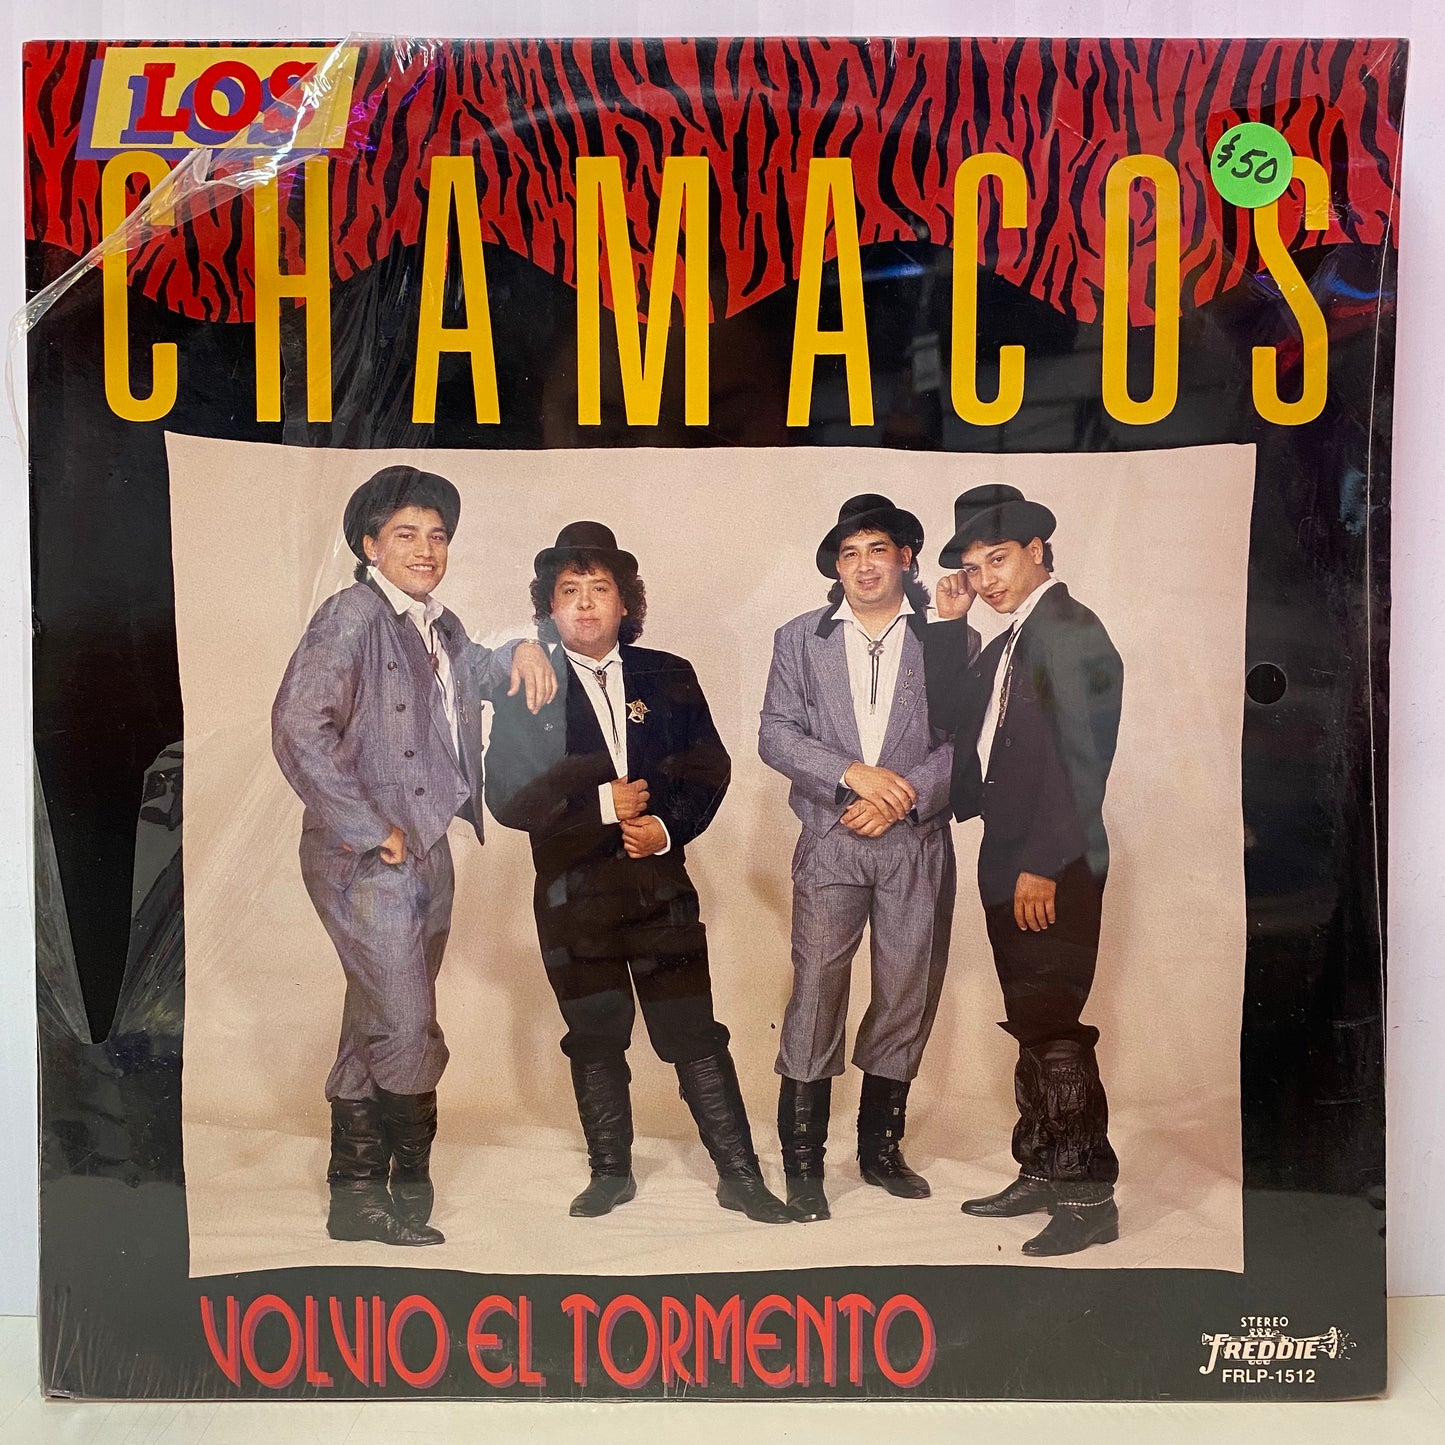 Los Chamacos- Volvio el Tormento (Vinyl)